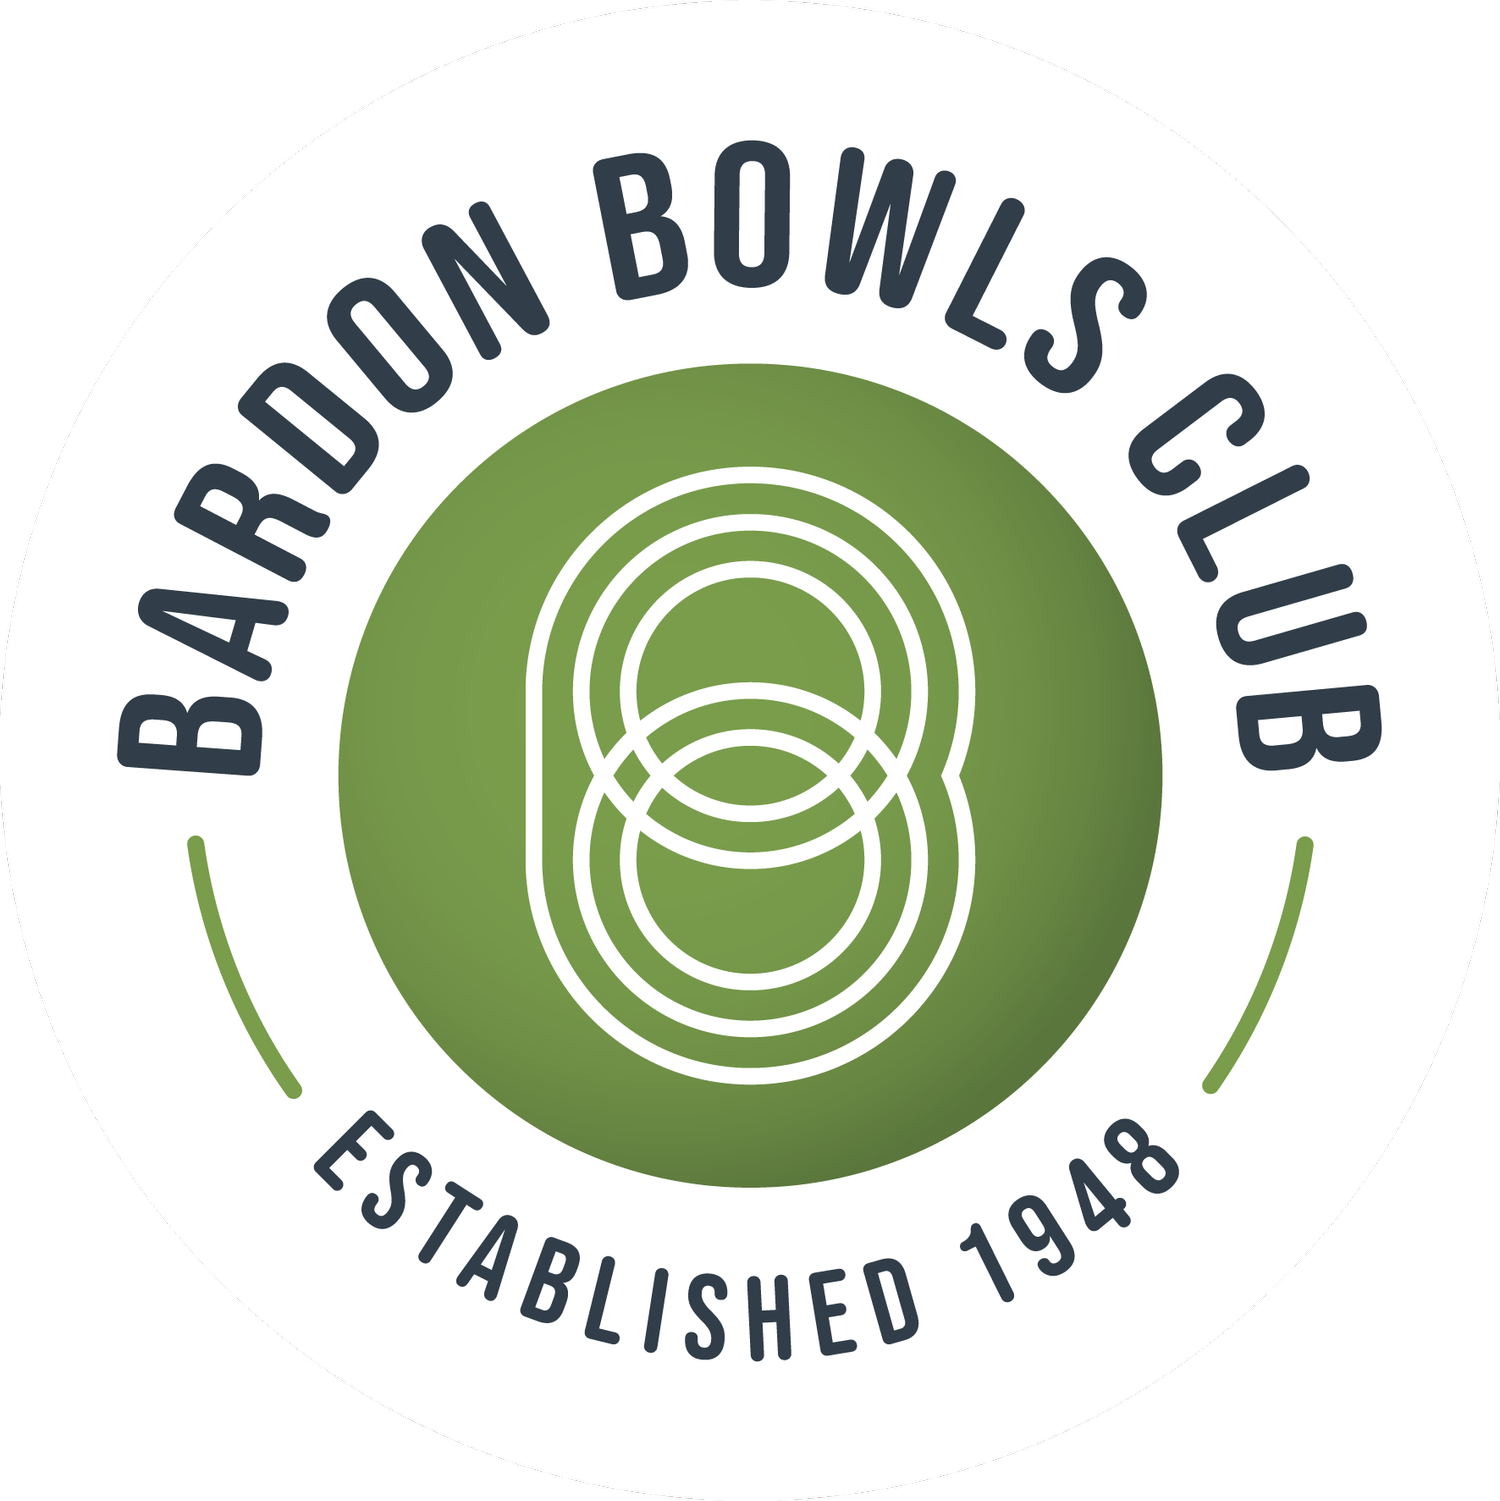 Bardon Bowls Club